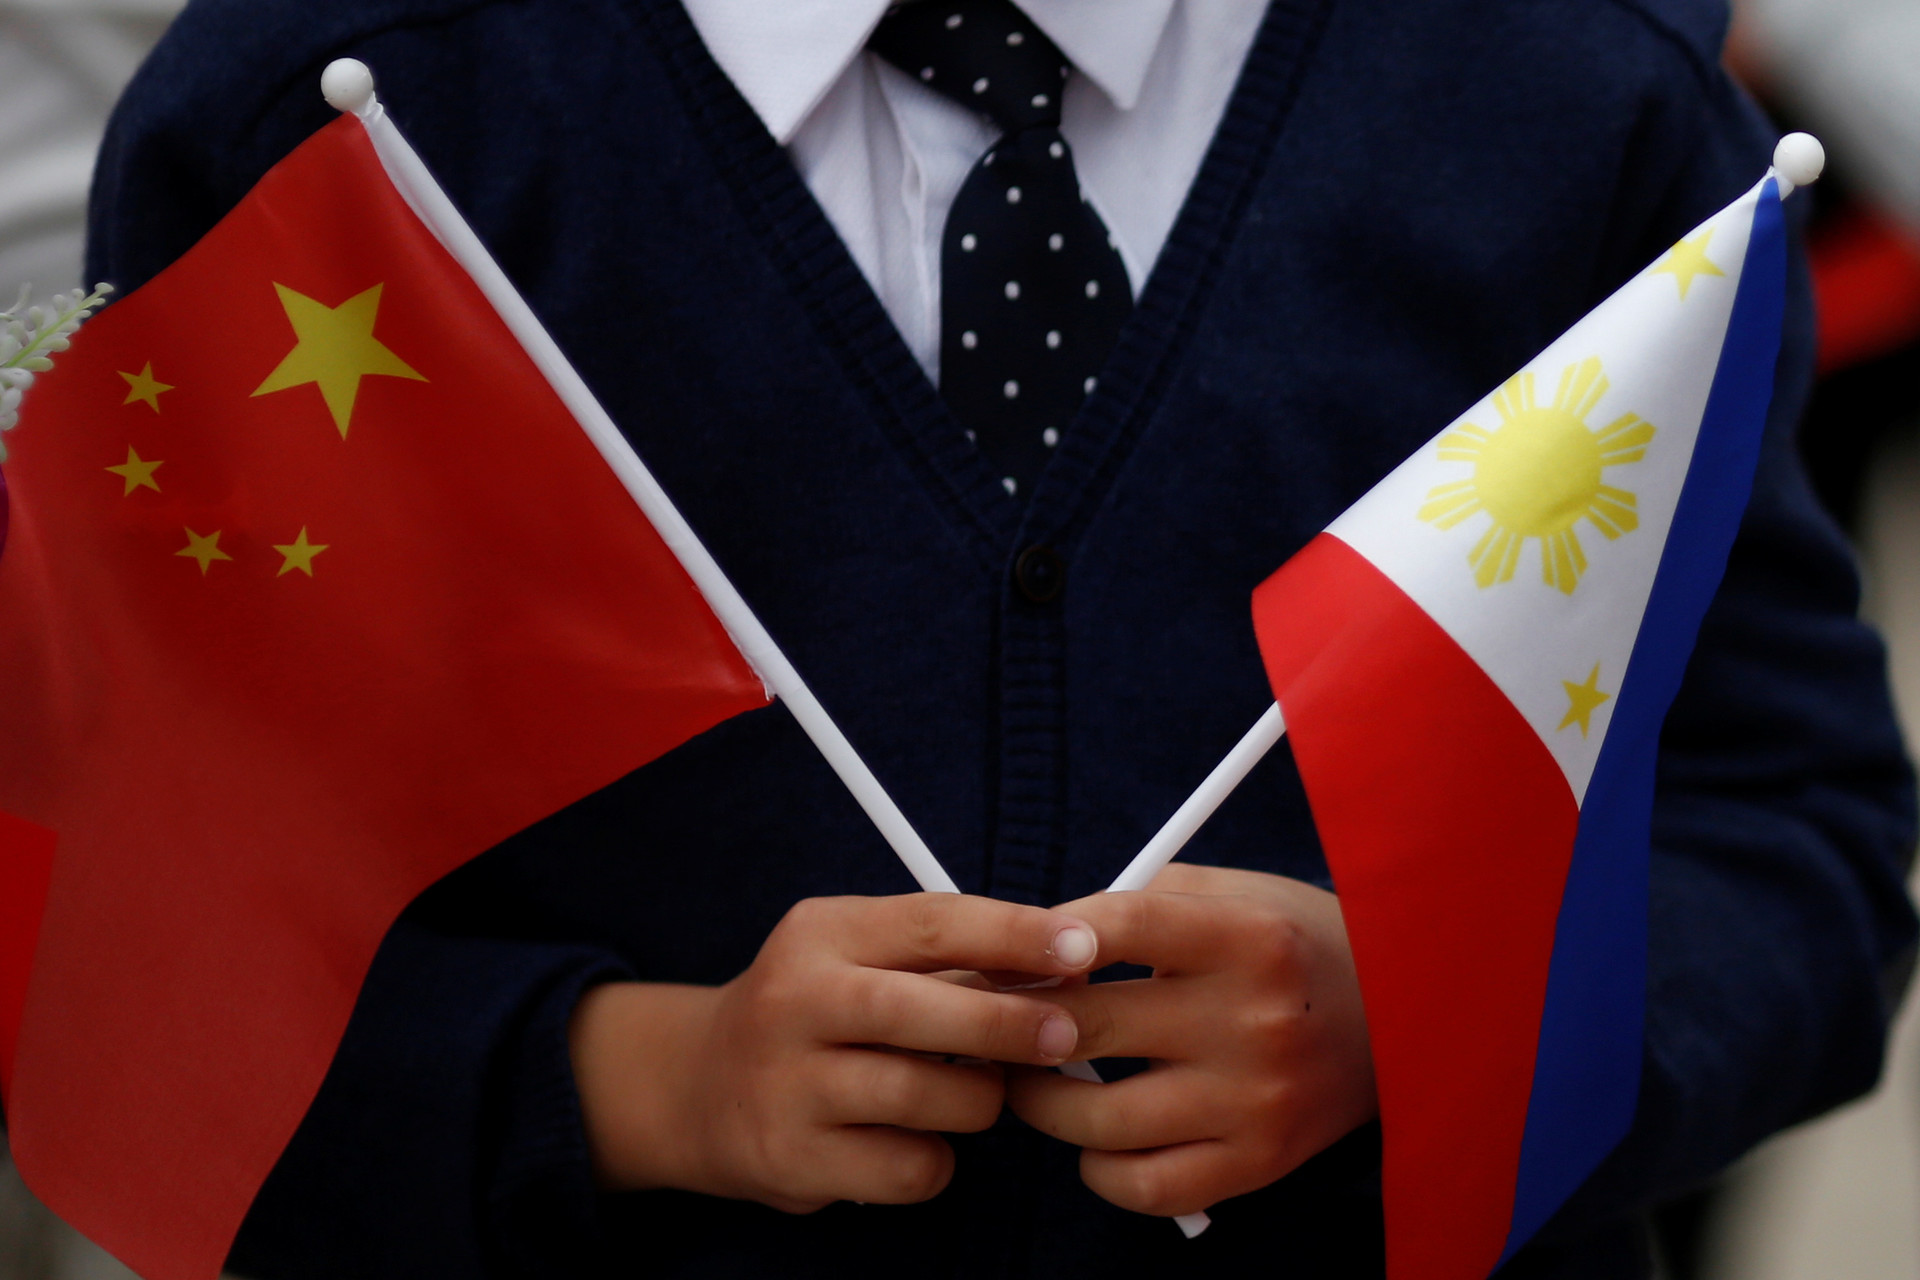 Banderas de China y Filipinas en la reunión de los presidentes de ambos países, Xi Jinping y Rodrigo Duterte, en Pekín, el 20 de octubre de 2016.